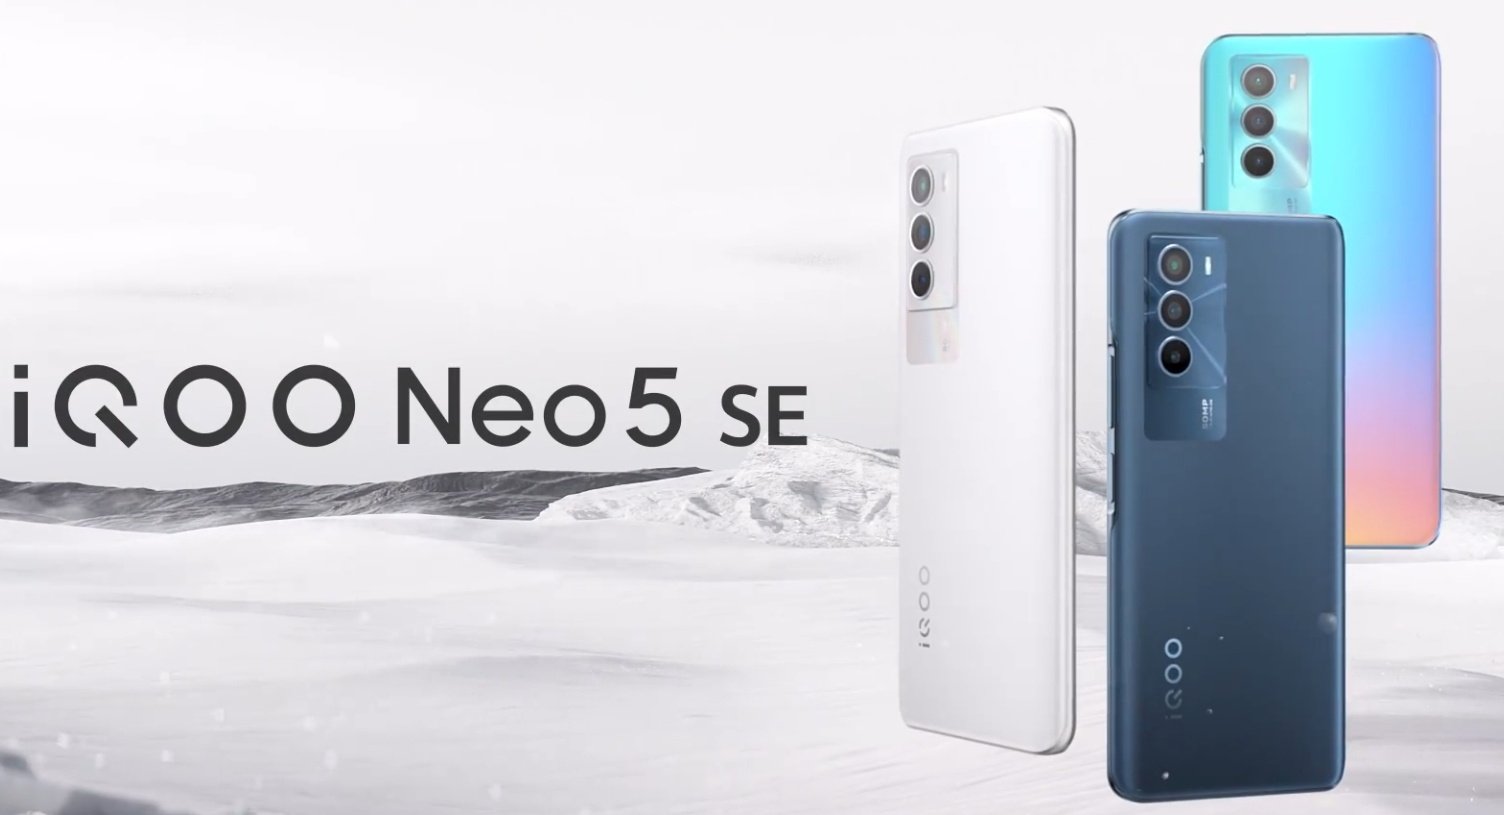 iQOO Neo 5 SE obtiene fecha de anuncio: Snapdragon 778G +, cámara de 50MP, pantalla AMOLED y carga de 66W